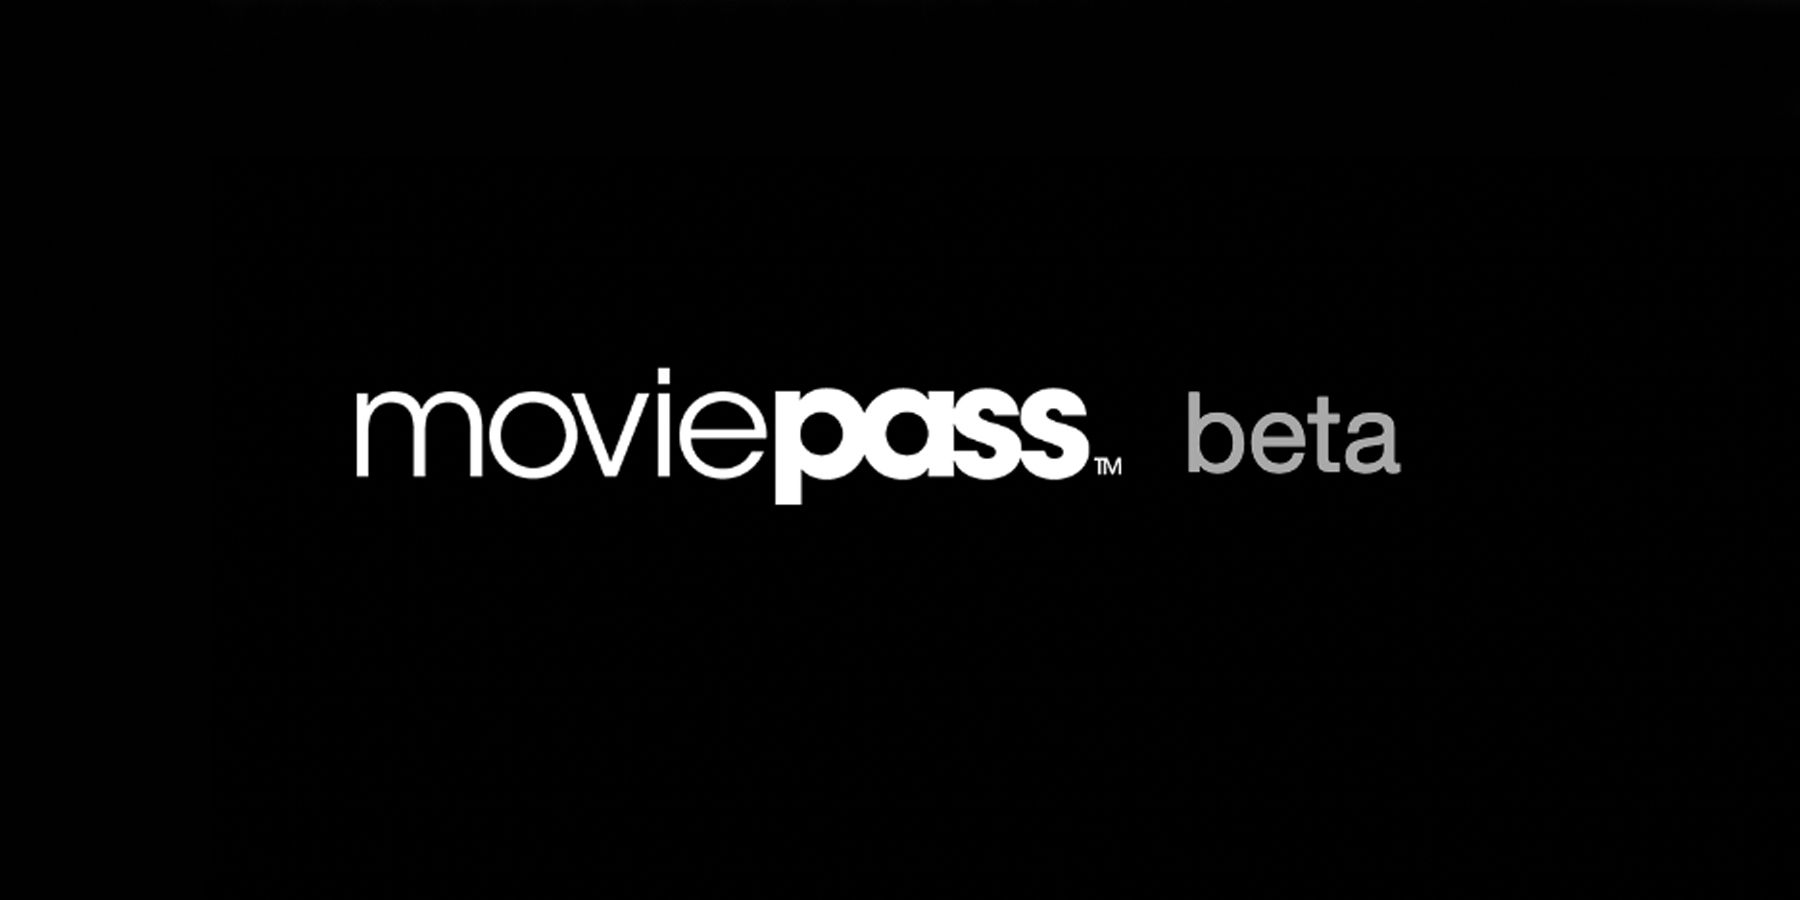 MoviePass Return